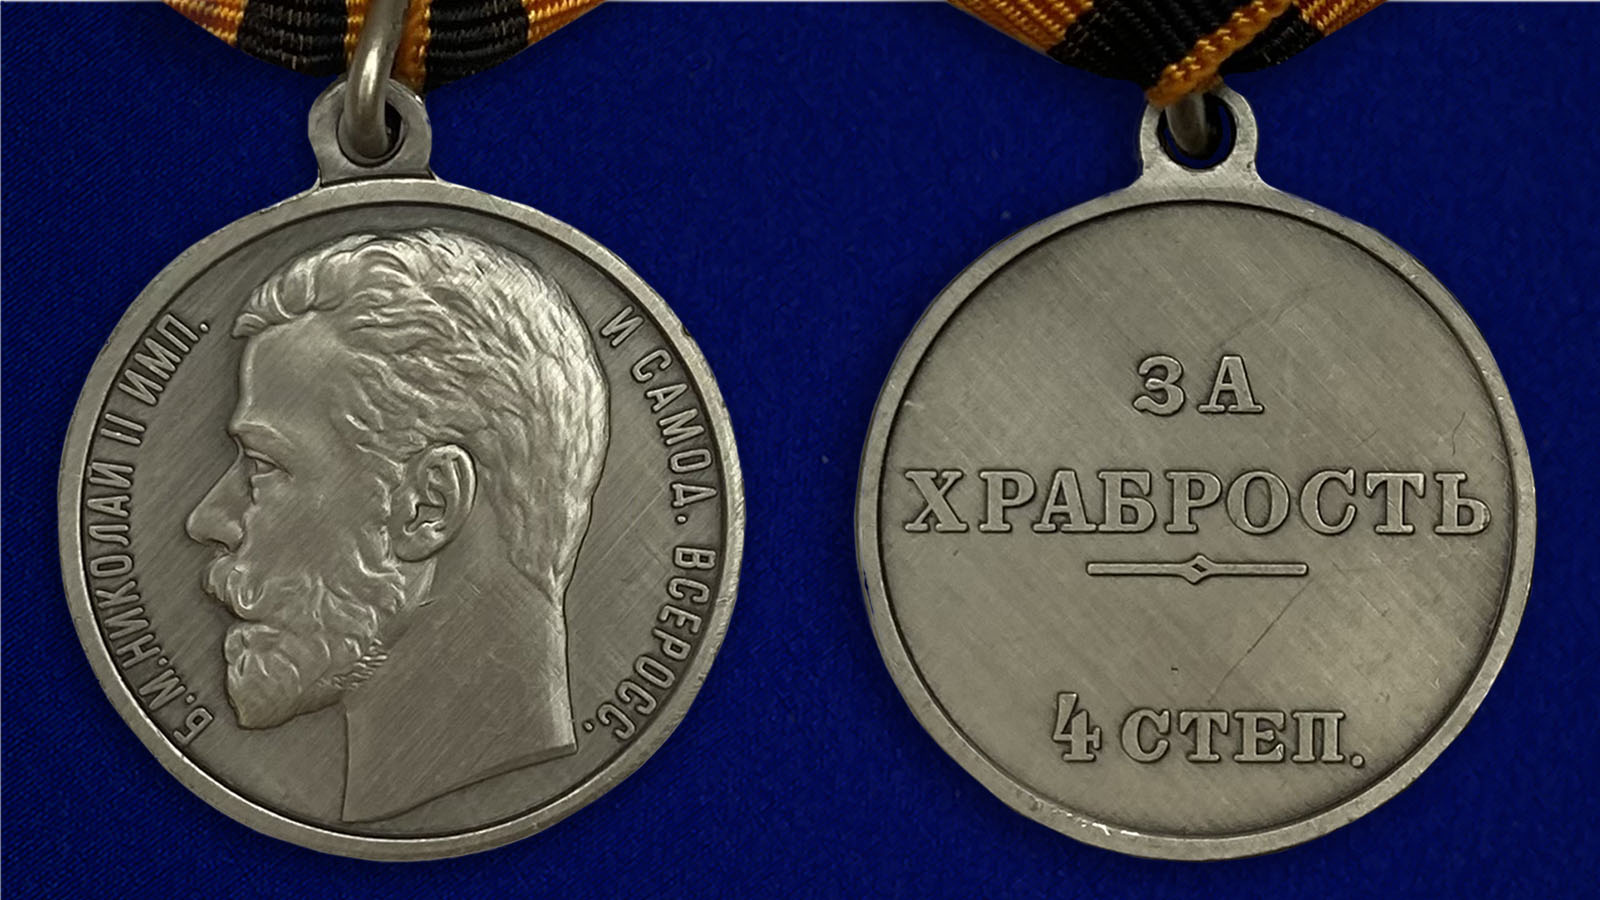 Заказать медаль «За храбрость» 4 степени в Военпро